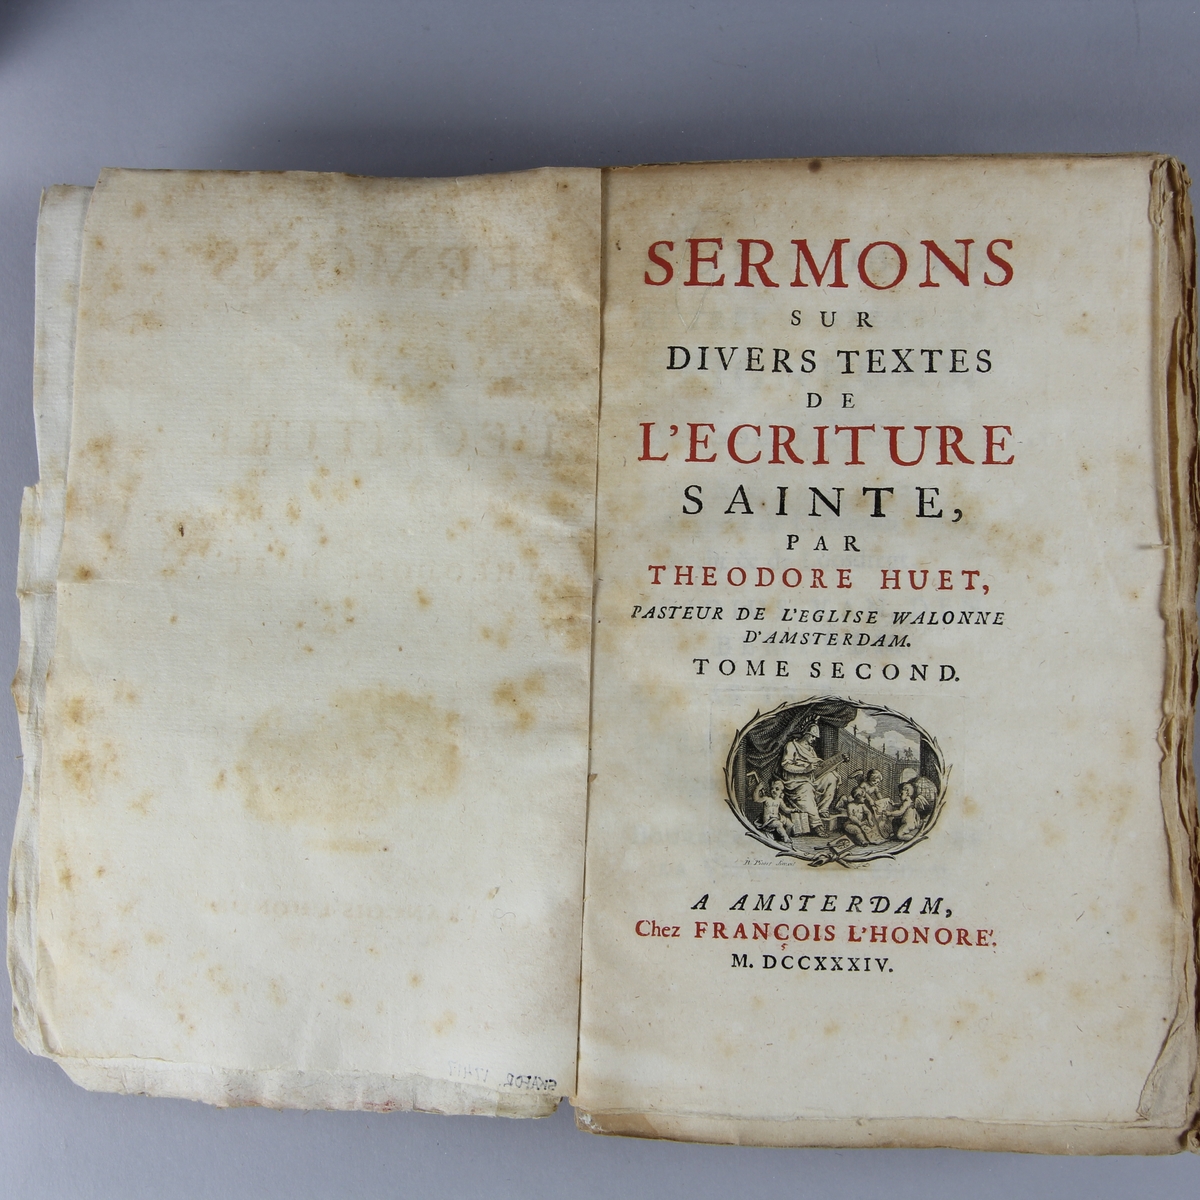 Bok, häftad, "Sermons sur divers textes de l´écriture sainte" del 2.
Pärm av marmorerat papper, oskuret snitt, ej uppsprättad. Skadad etikett på ryggen med oläslig text.